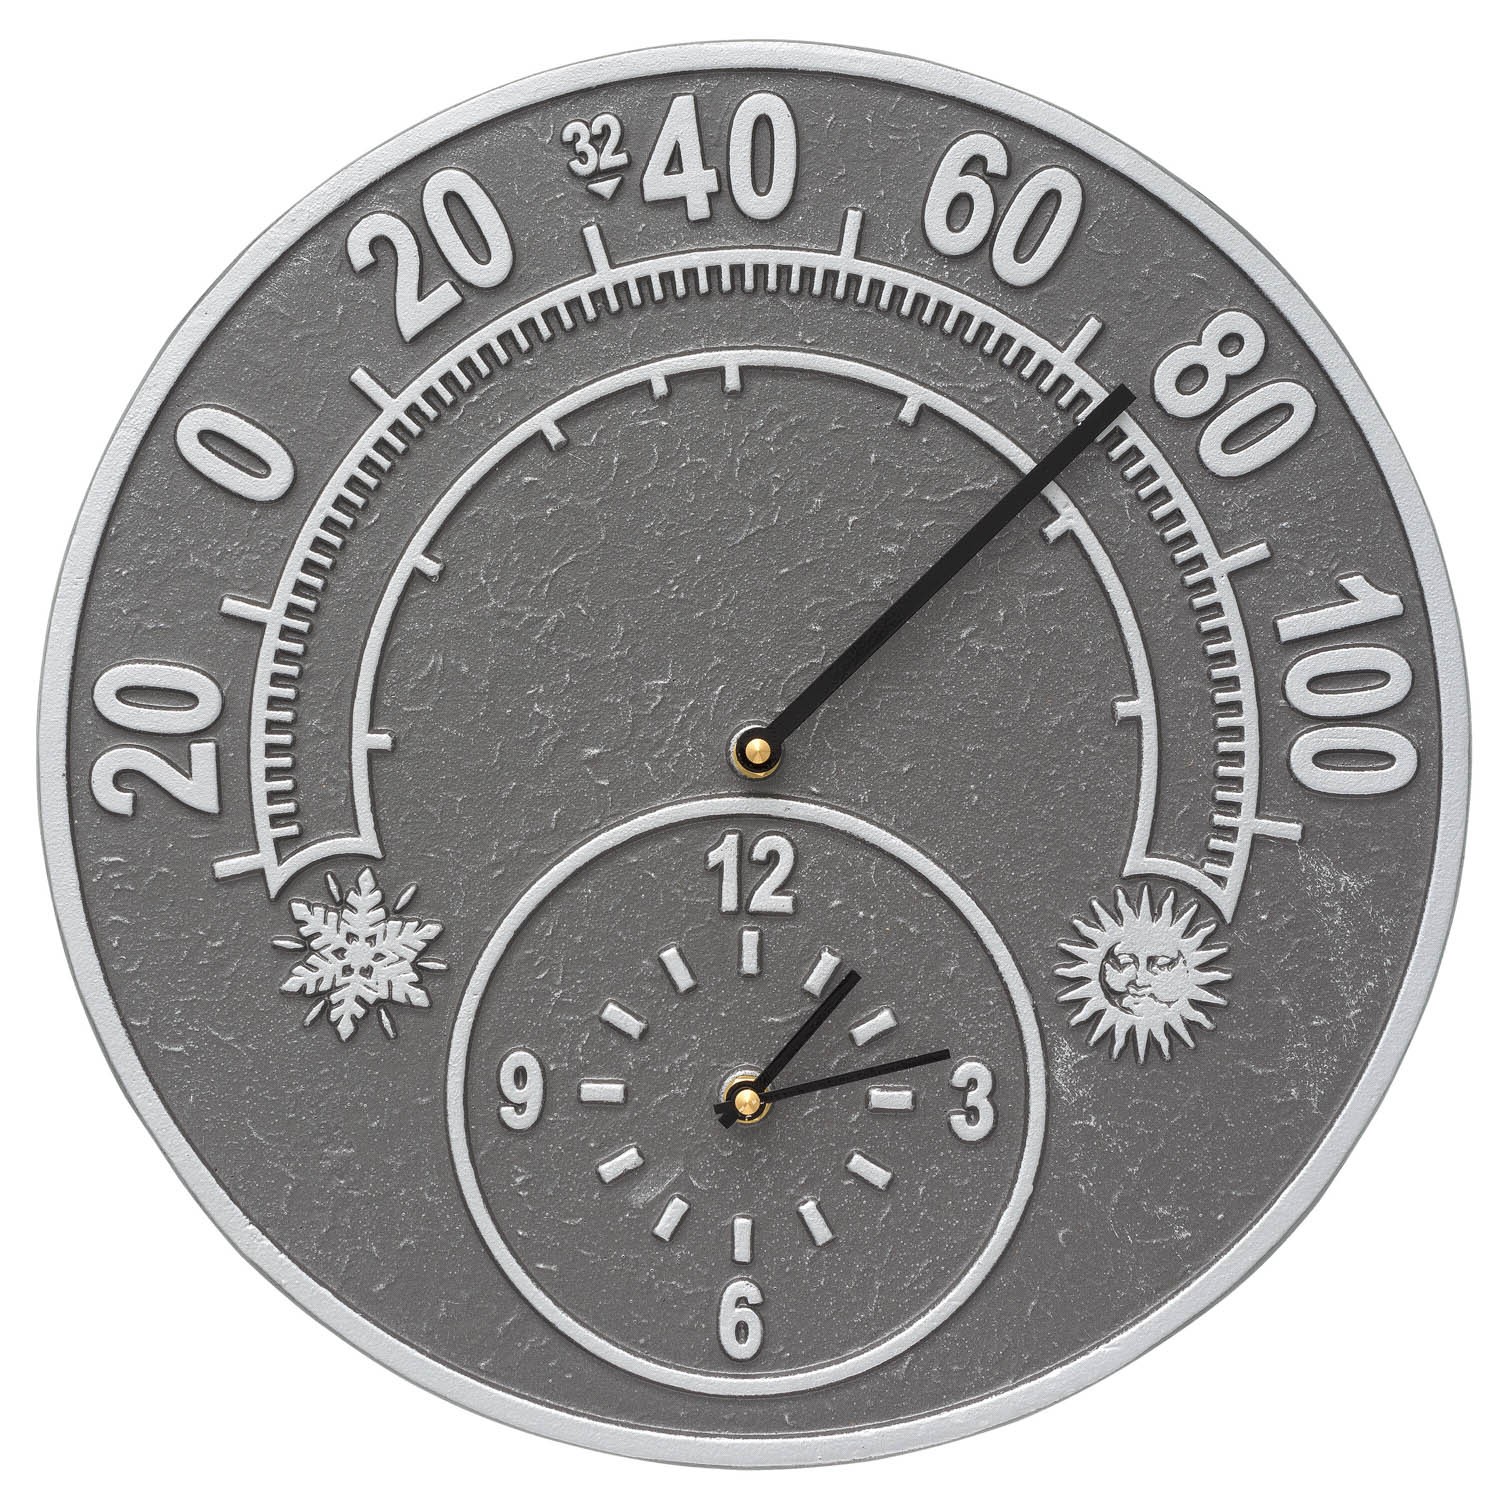 Solstice 14 In Indoor Outdoor Wall Clock Thermometer 